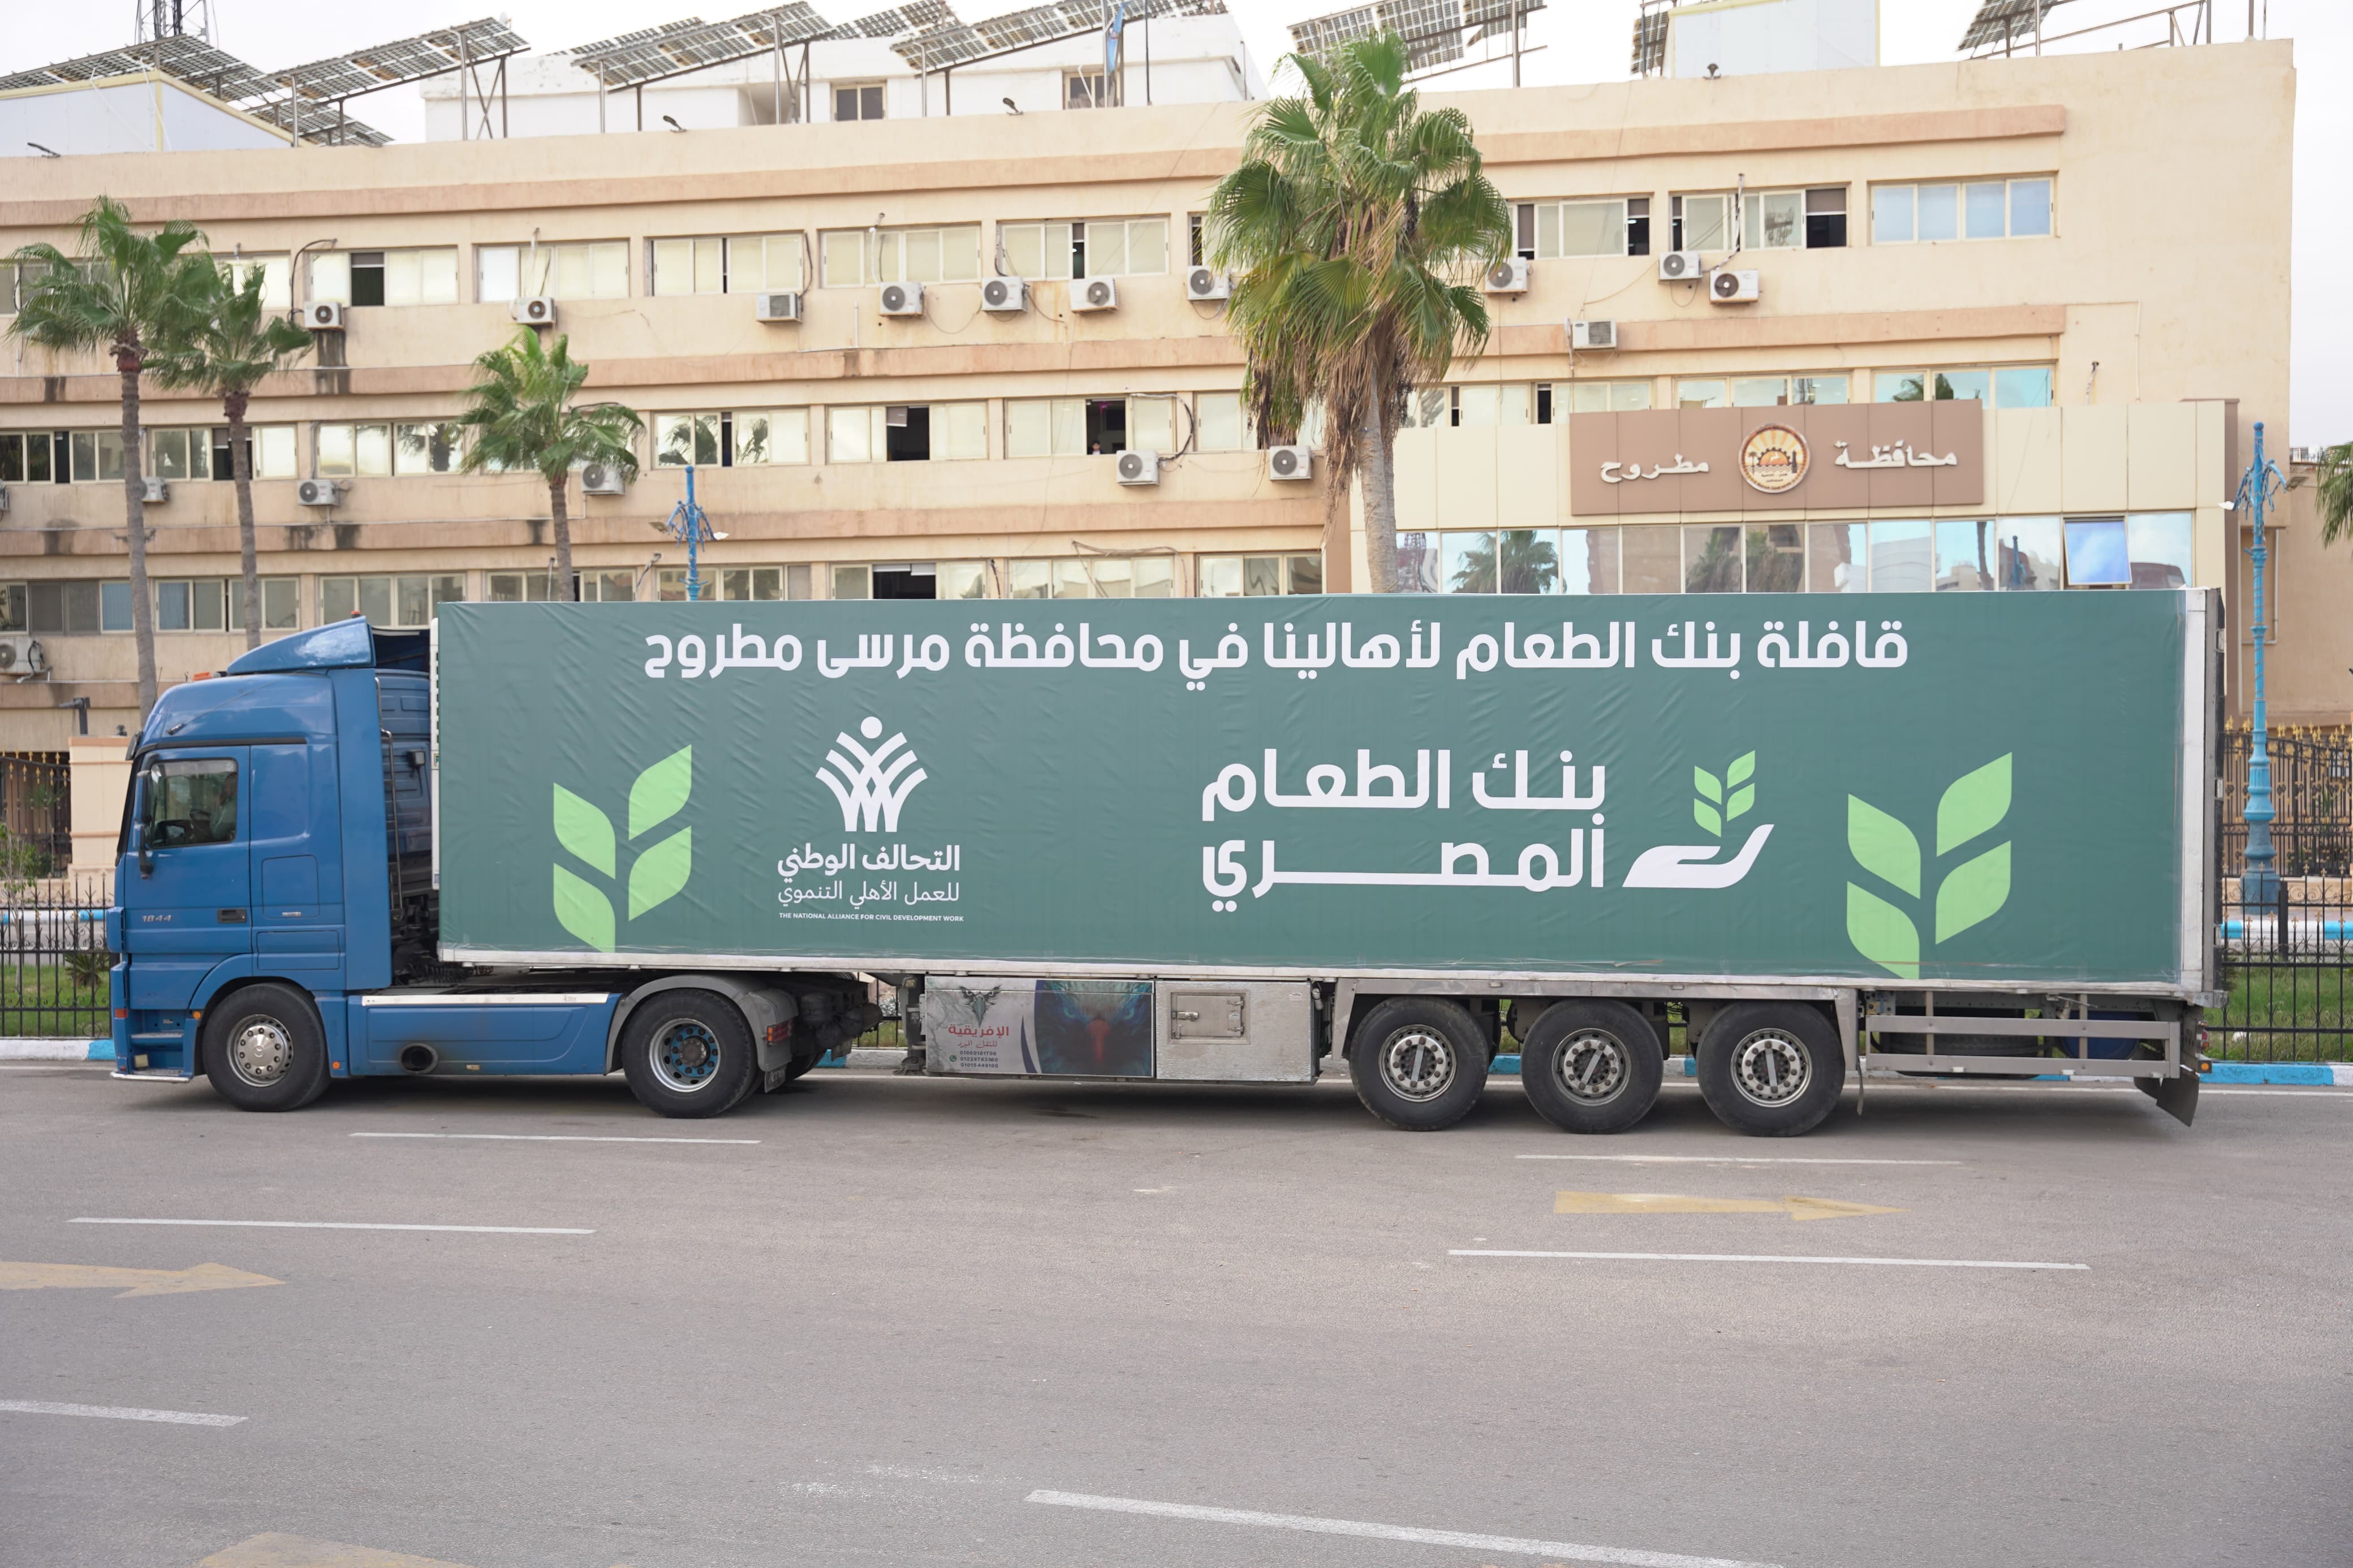 قافلة التحالف الوطني  لتوزيع المواد الغذائية بالمناطق الصحراويةفي مطروح